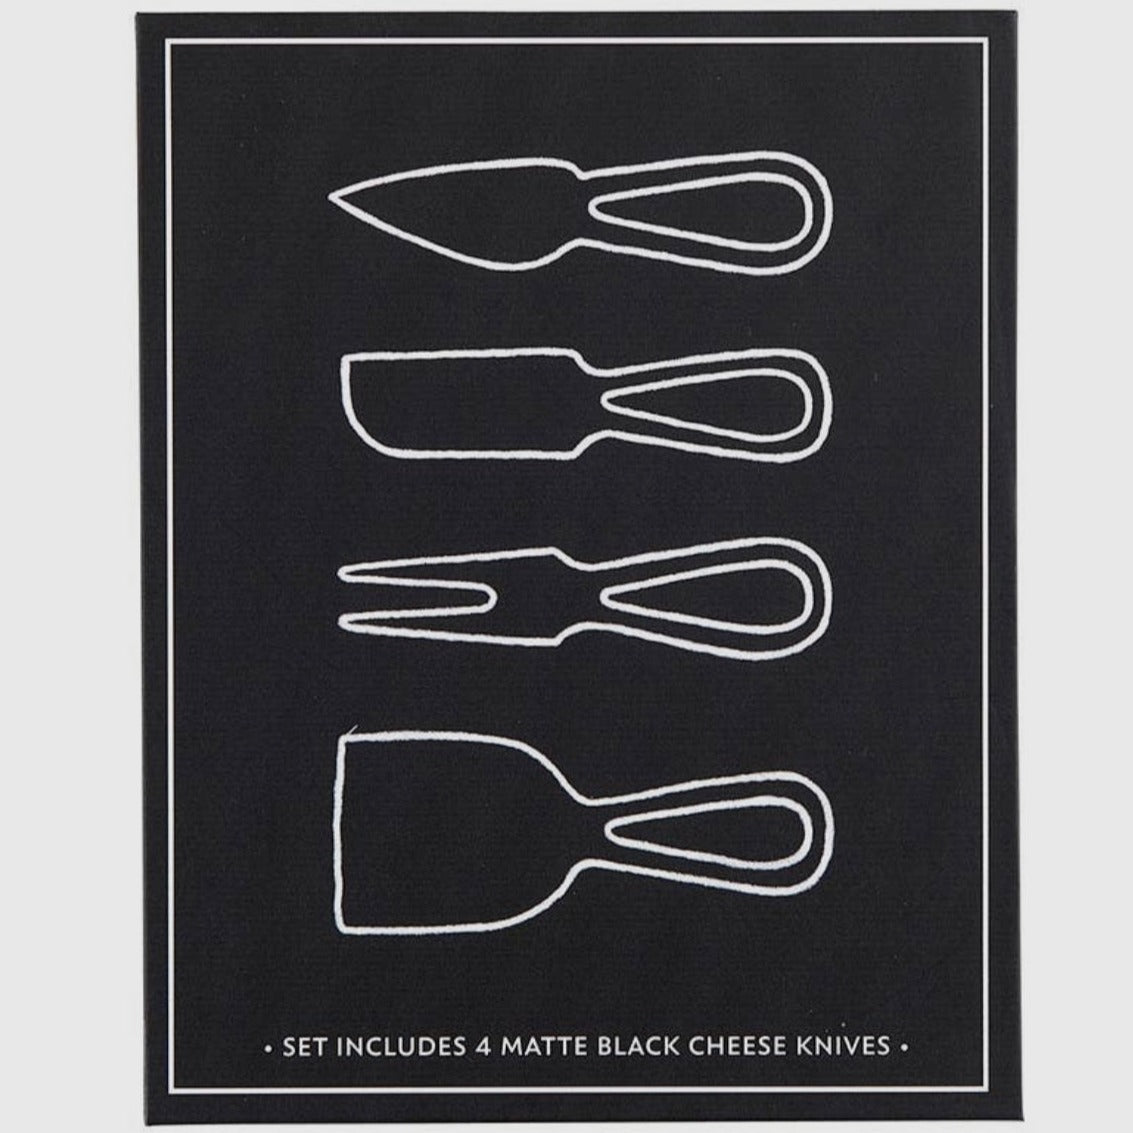 Santa Barbara Matte Black Cheese Knives Book Box